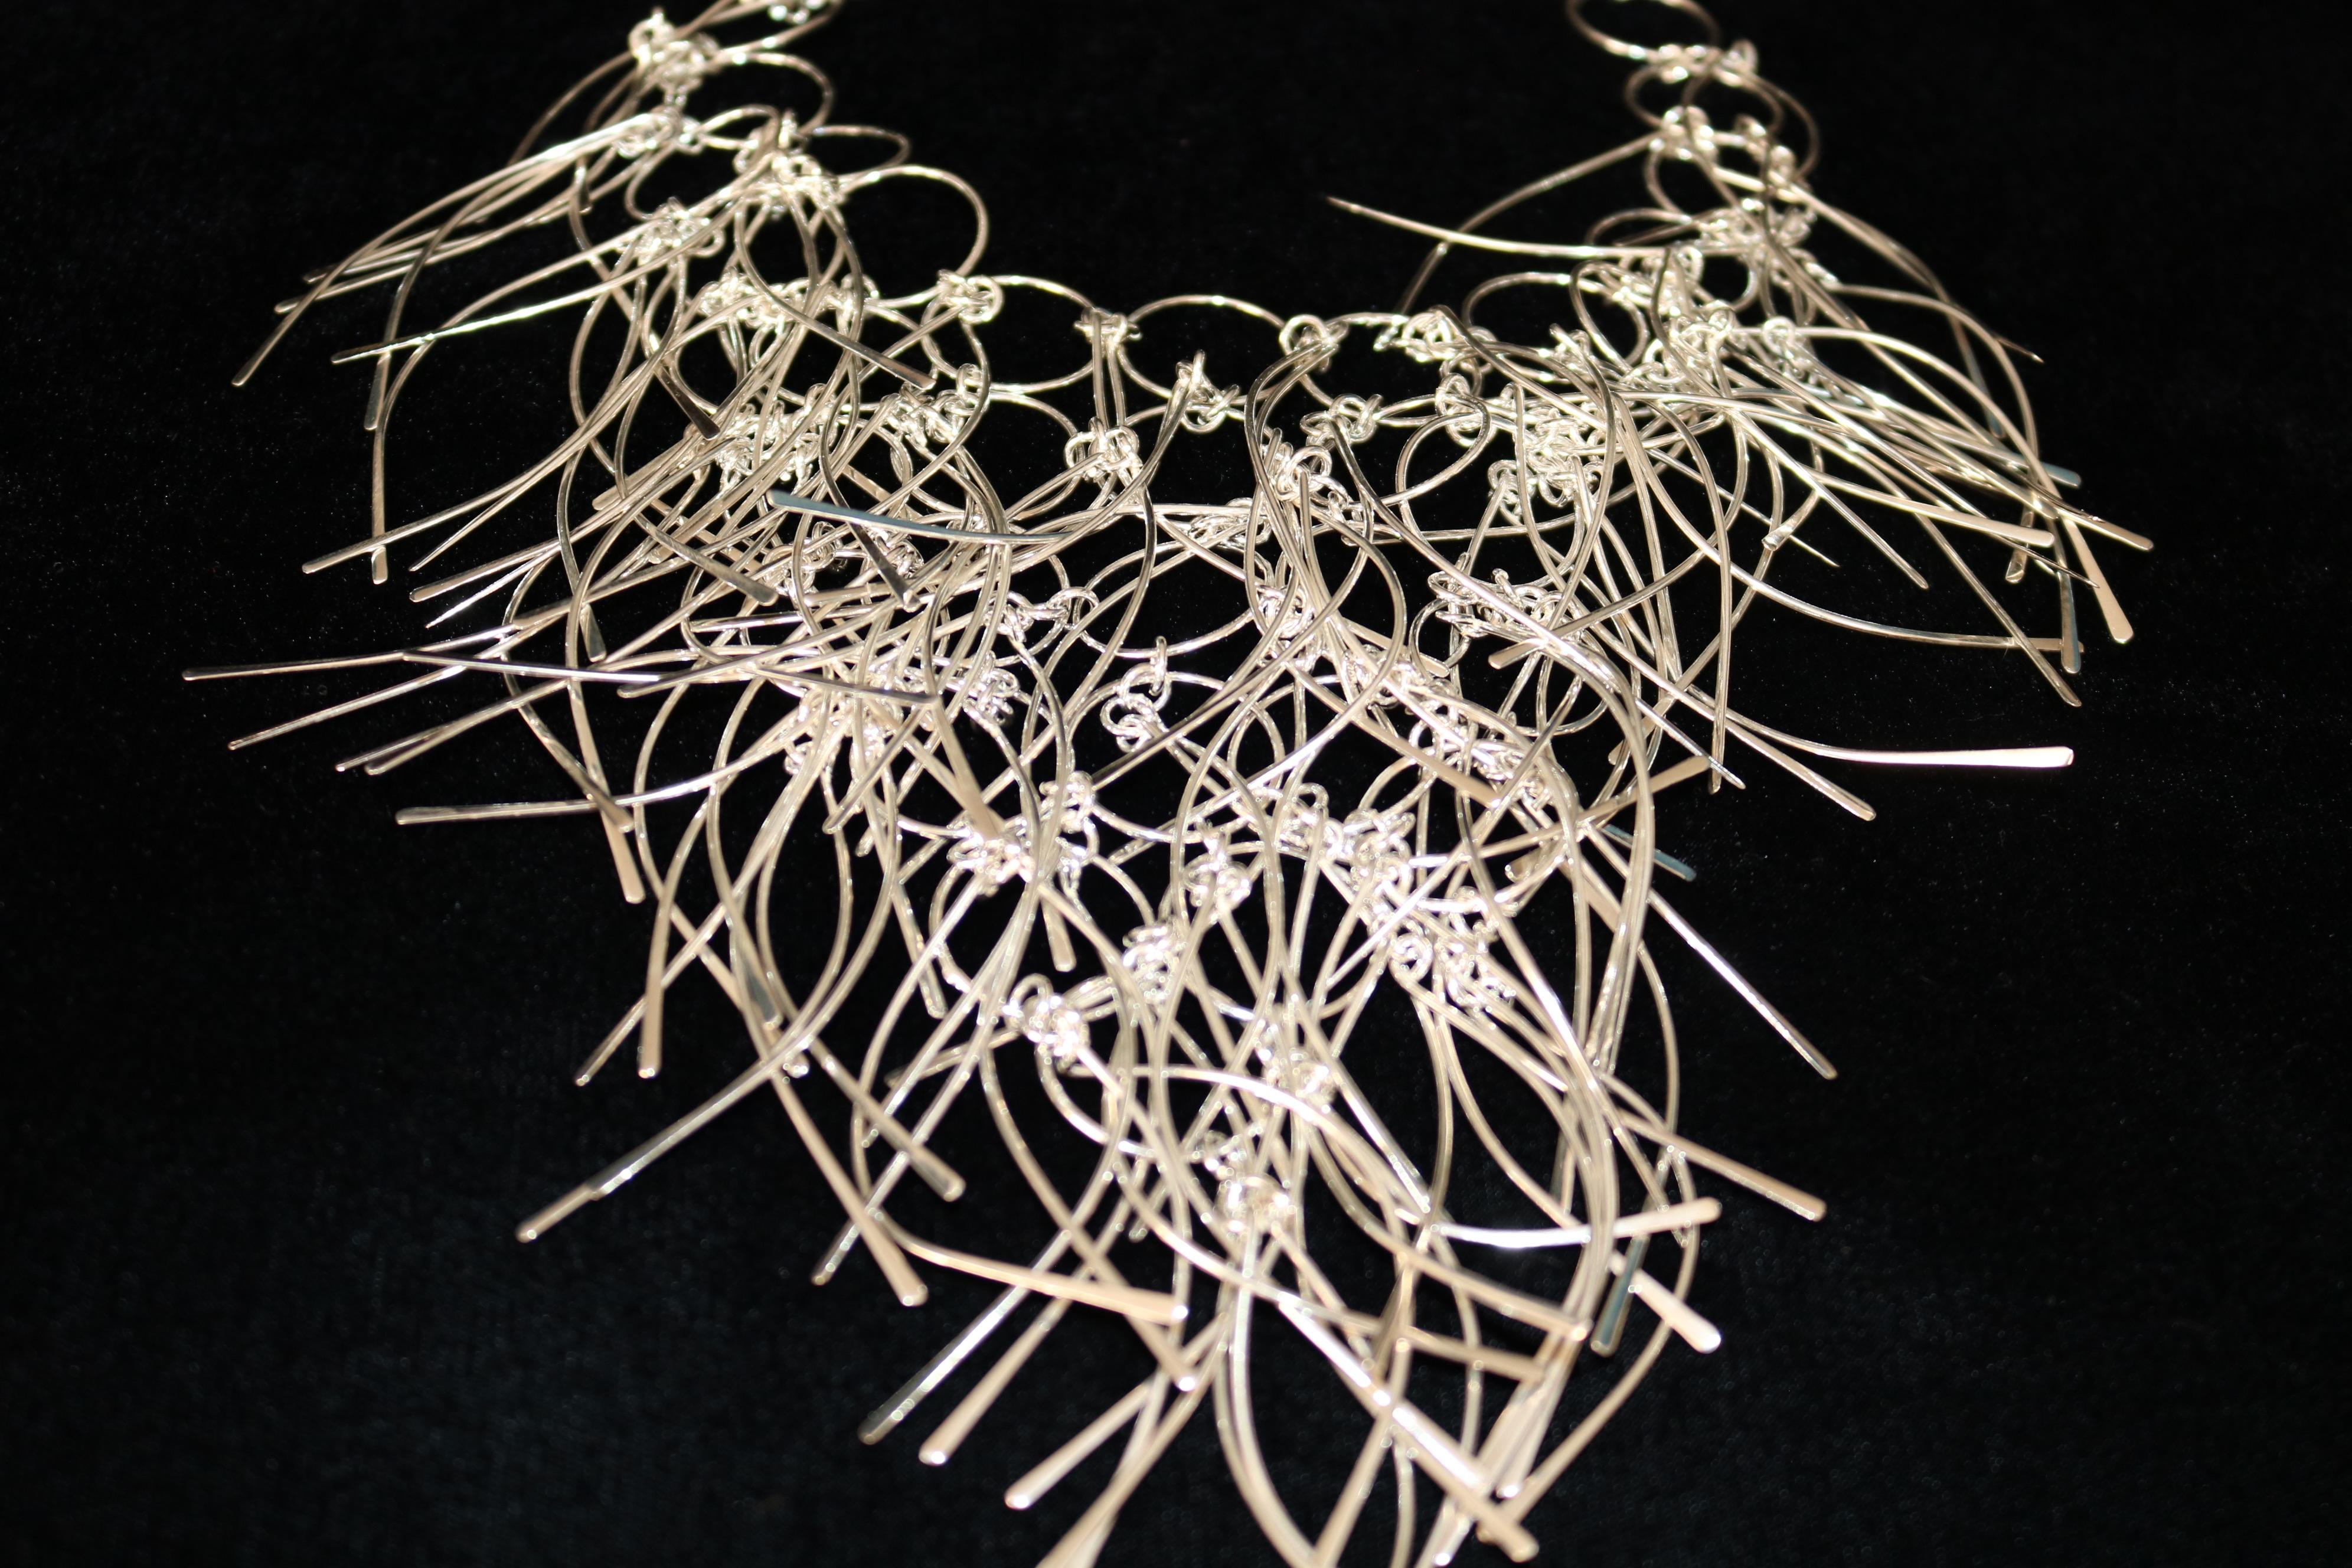  Rain Effect 925 Silver Contemporary Necklace  In New Condition For Sale In Miami, FL